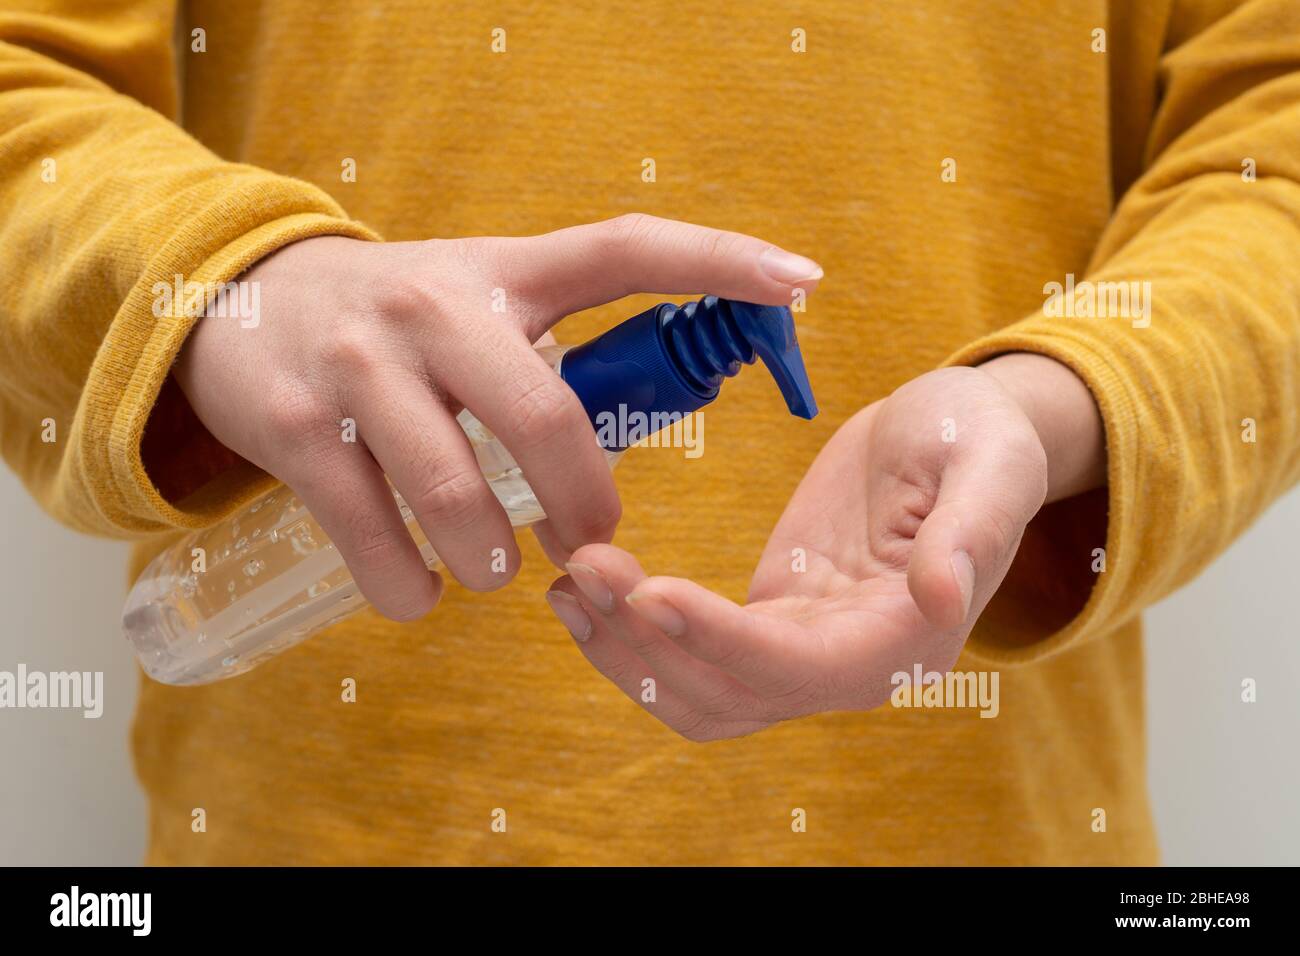 Aplicación de gel desinfectante para manos para proteger contra bacterias y virus Foto de stock